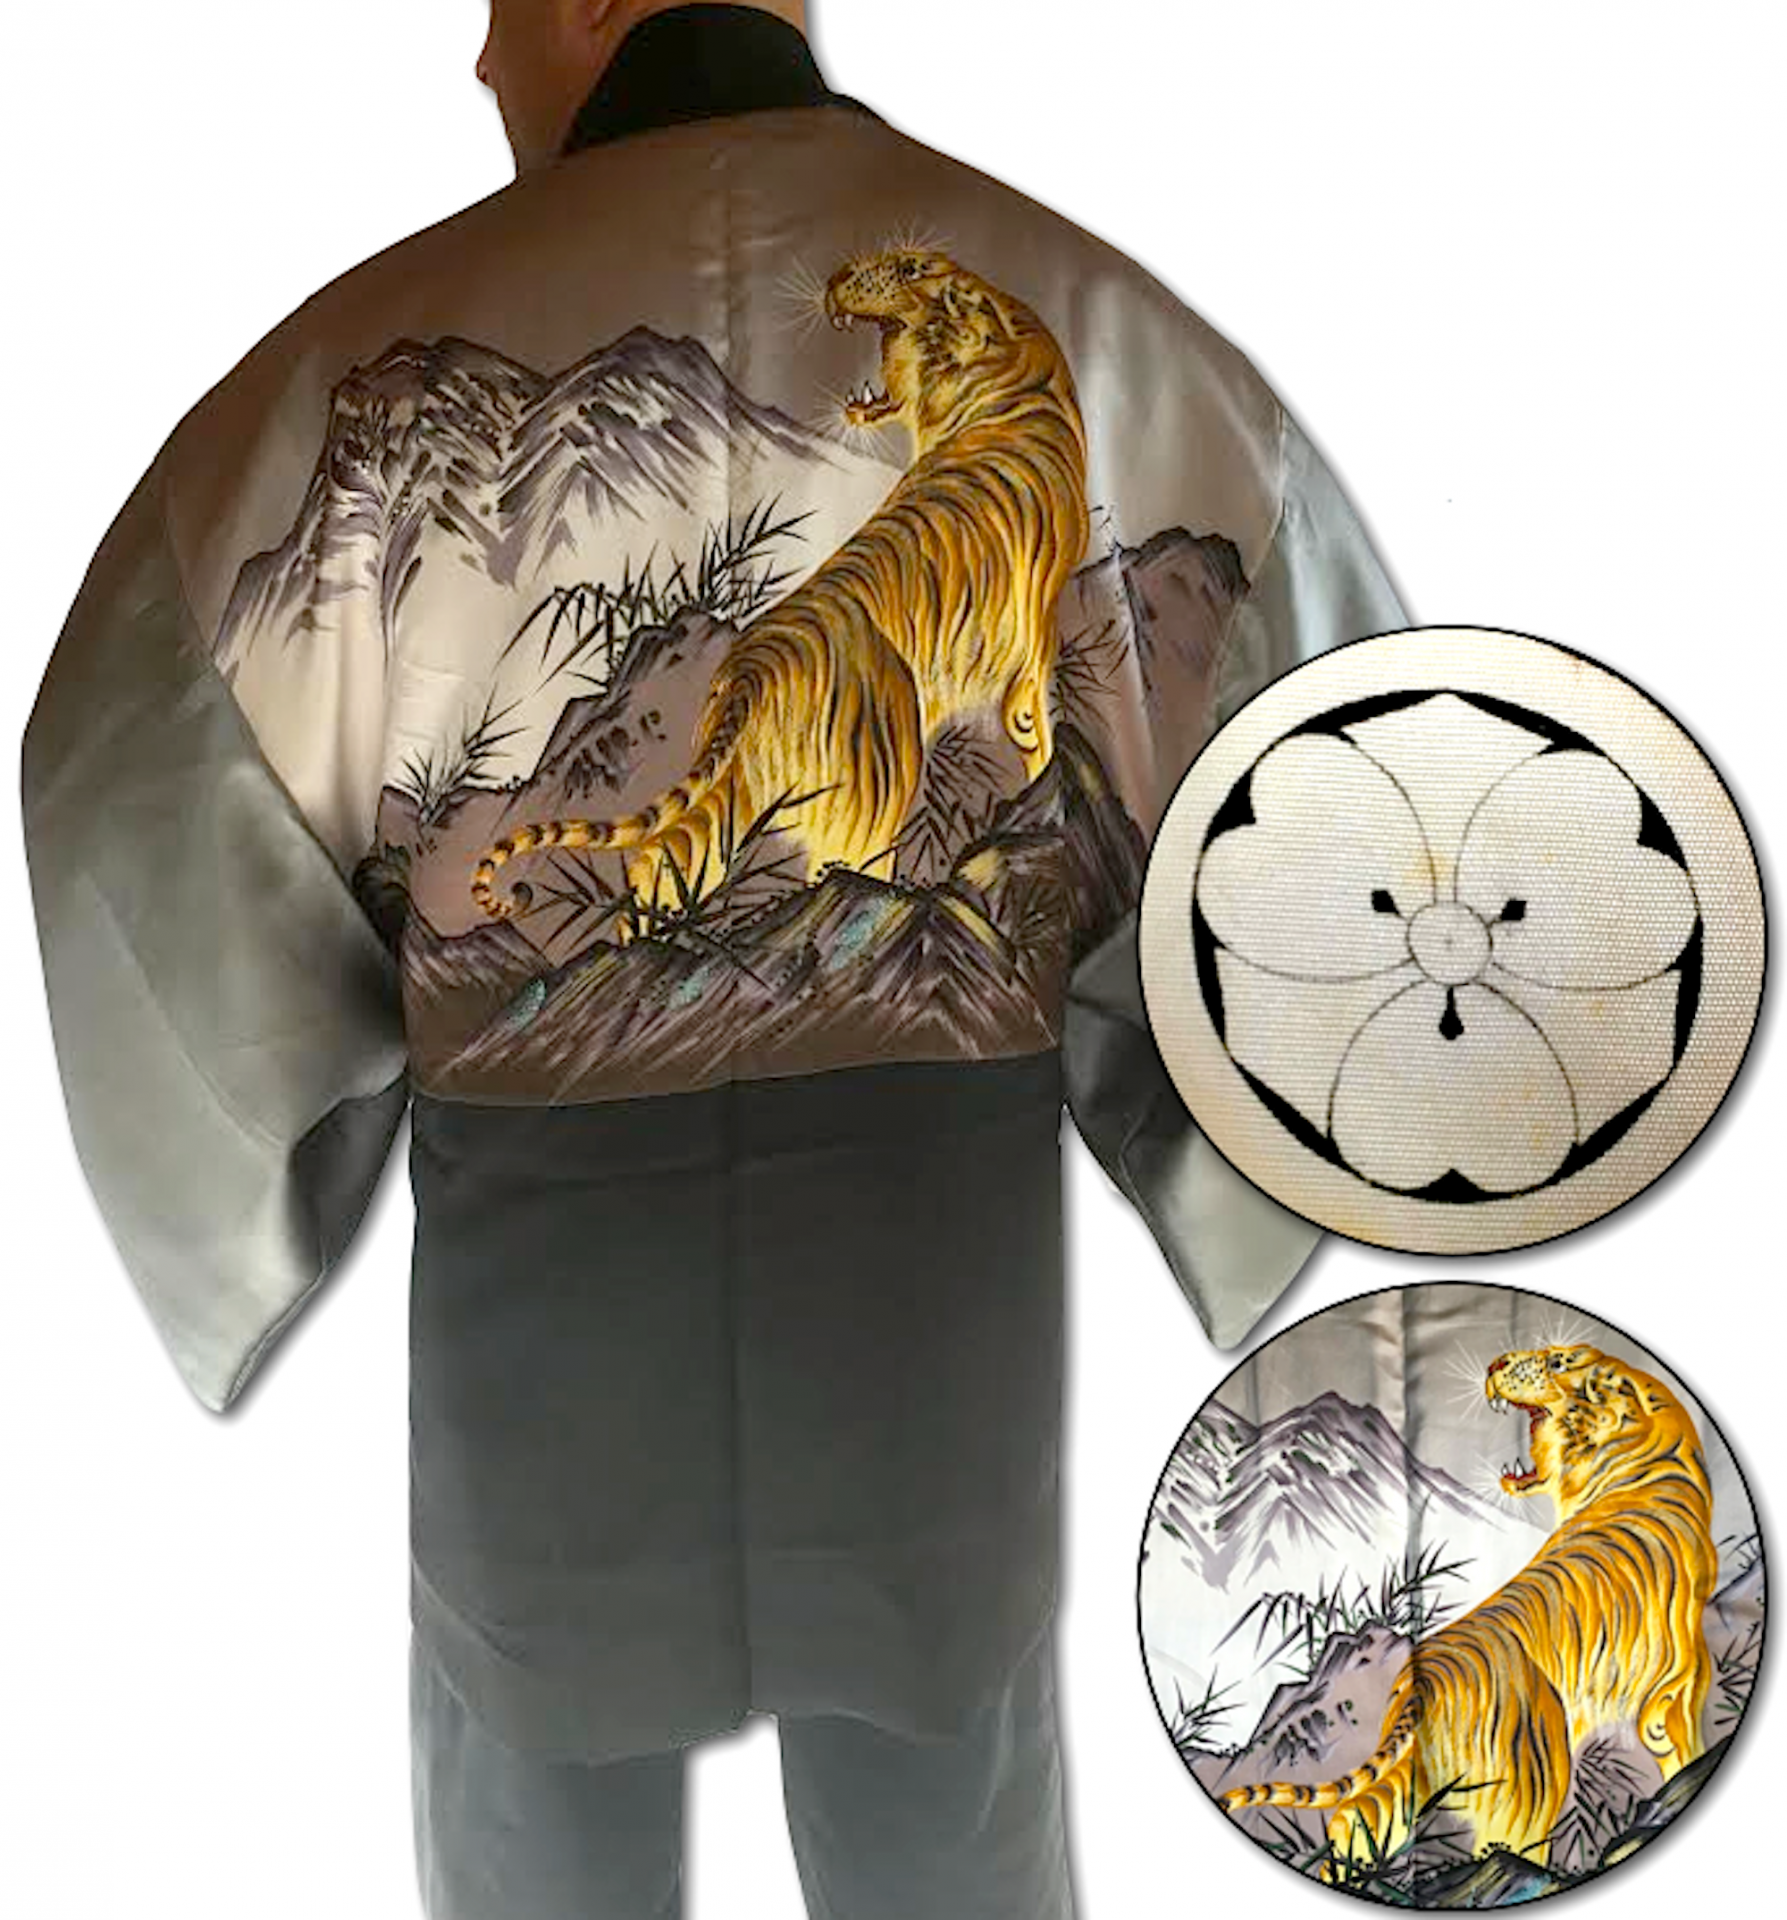 Rare antique kimono haori samourai soie noire maruni kenkatabami montsuki tora le tigre 